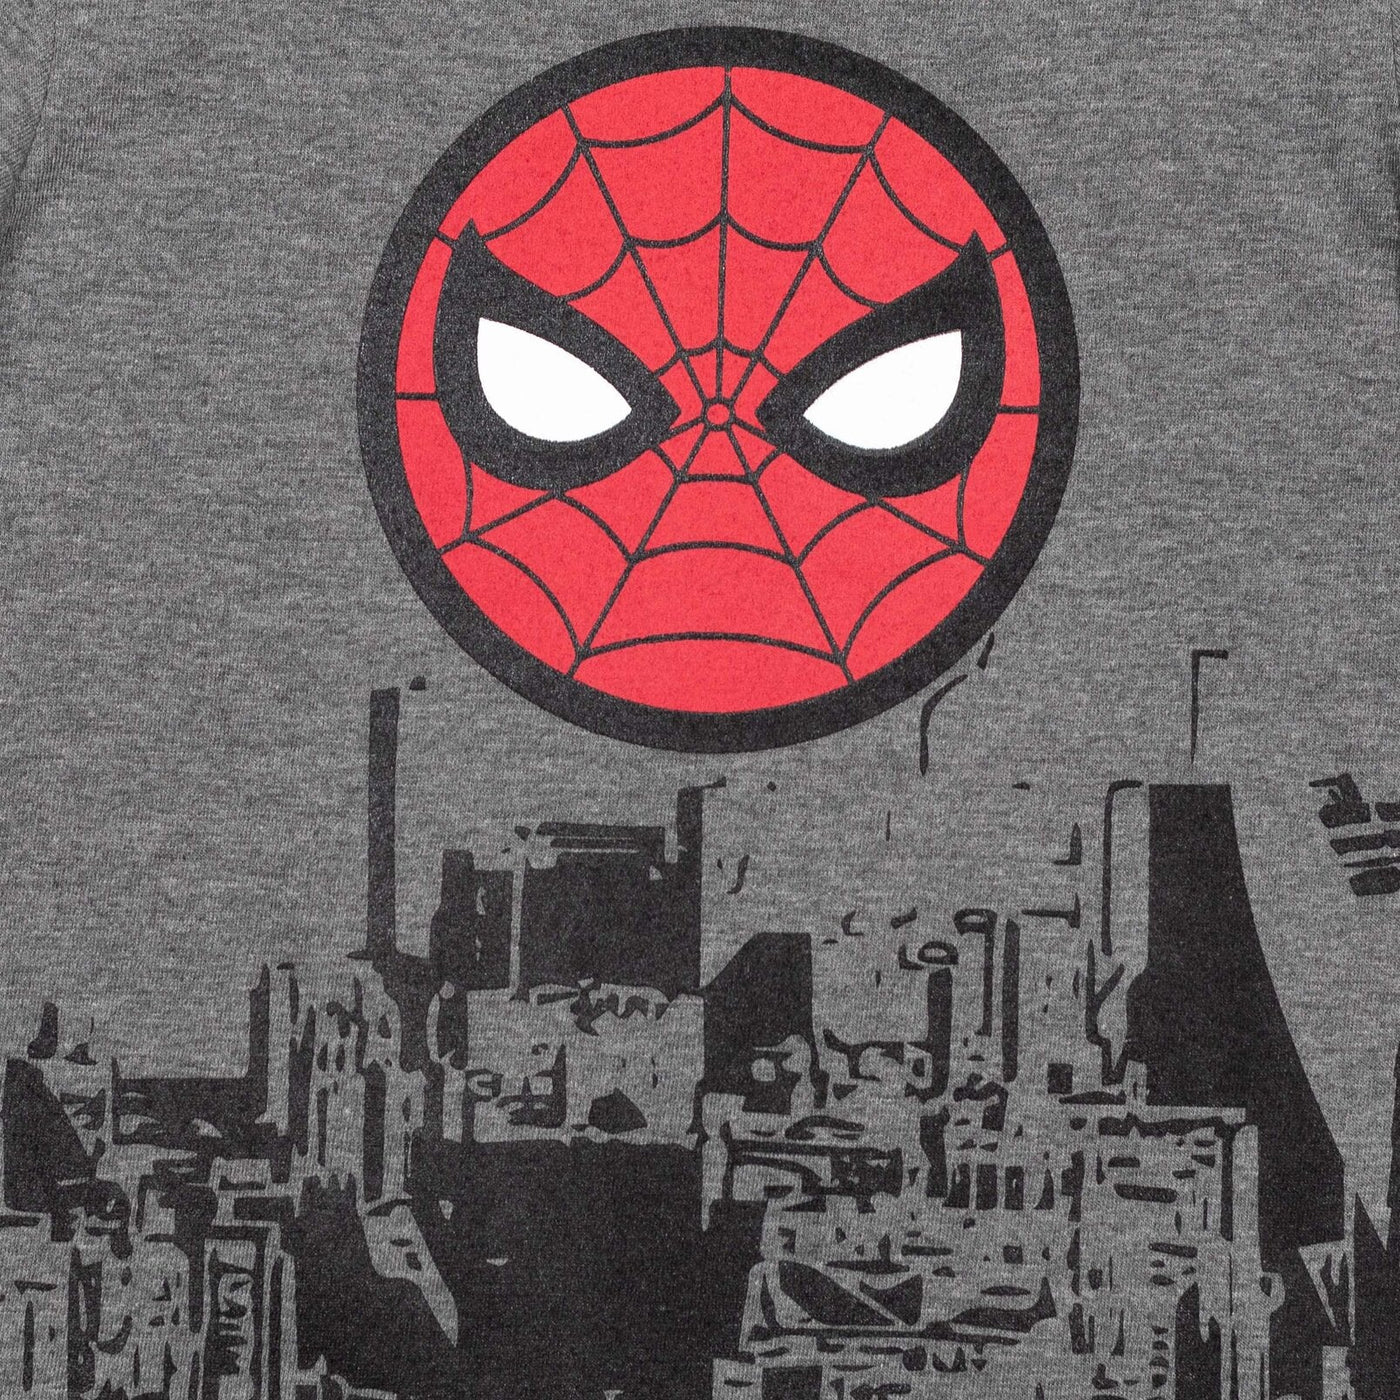 Marvel Spider - Man 3 Pack T - Shirts - imagikids